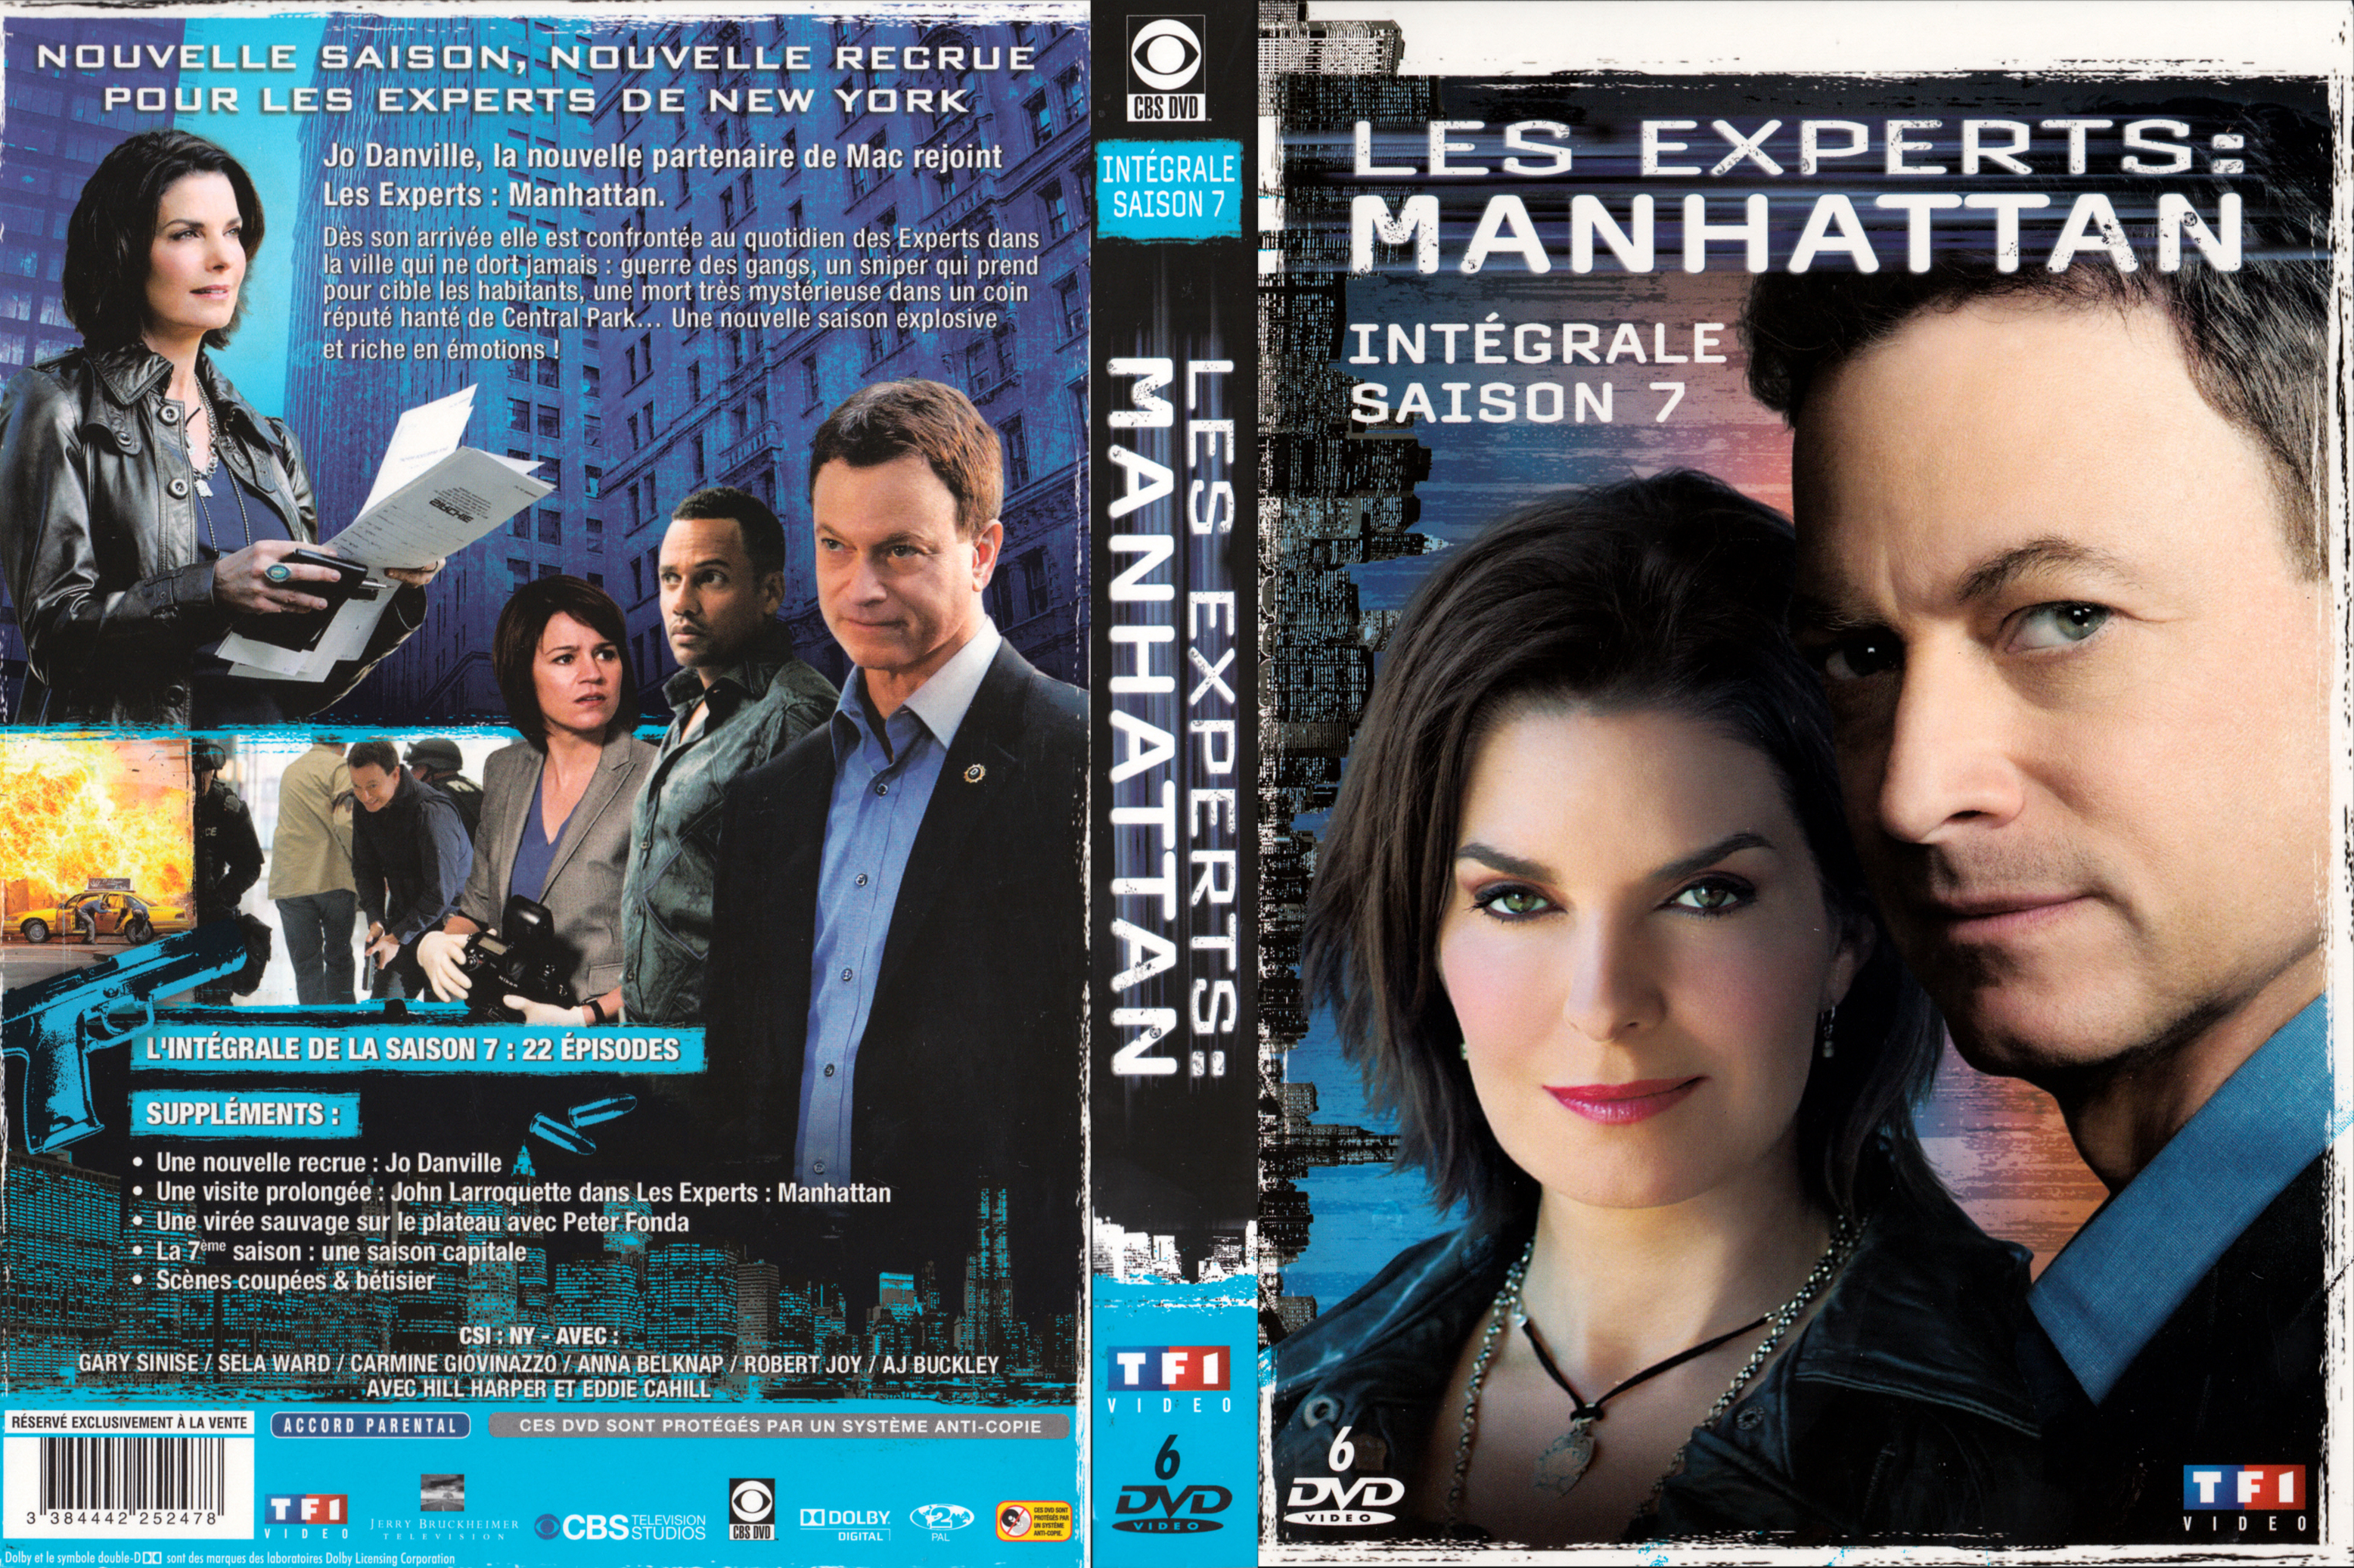 Jaquette DVD Les Experts Manhattan Saison 7